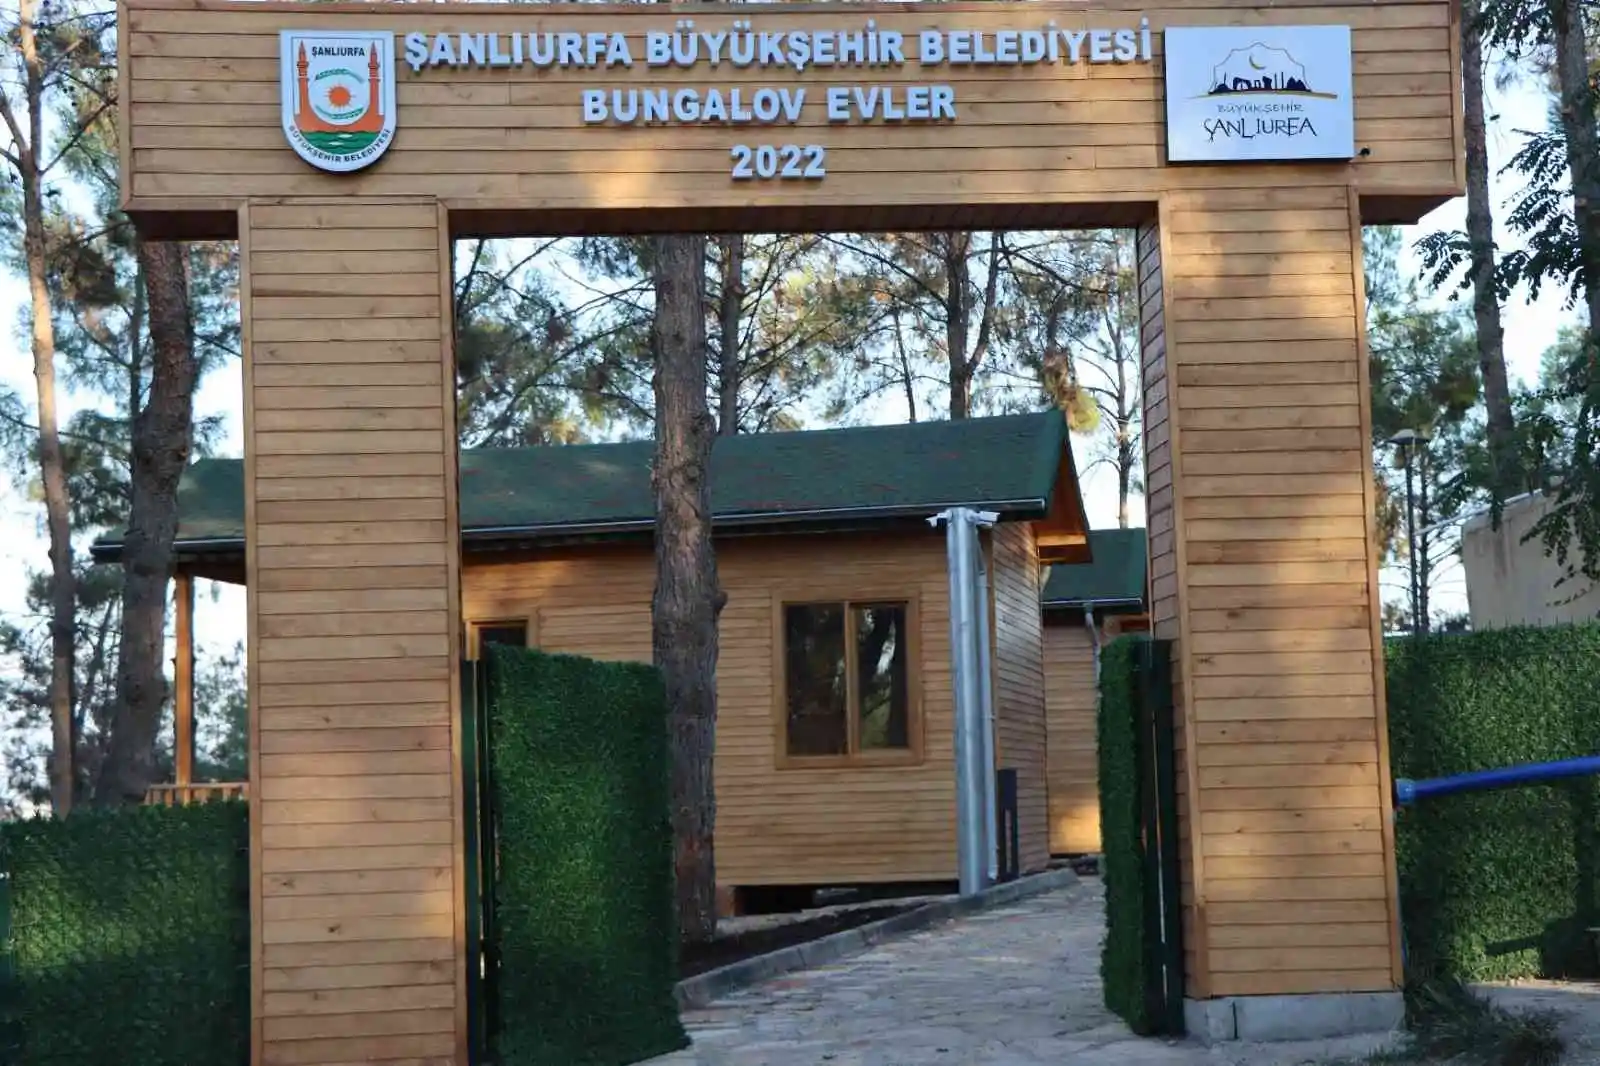 Bungalov evler turizmde yeni bir rota oluşturacak
